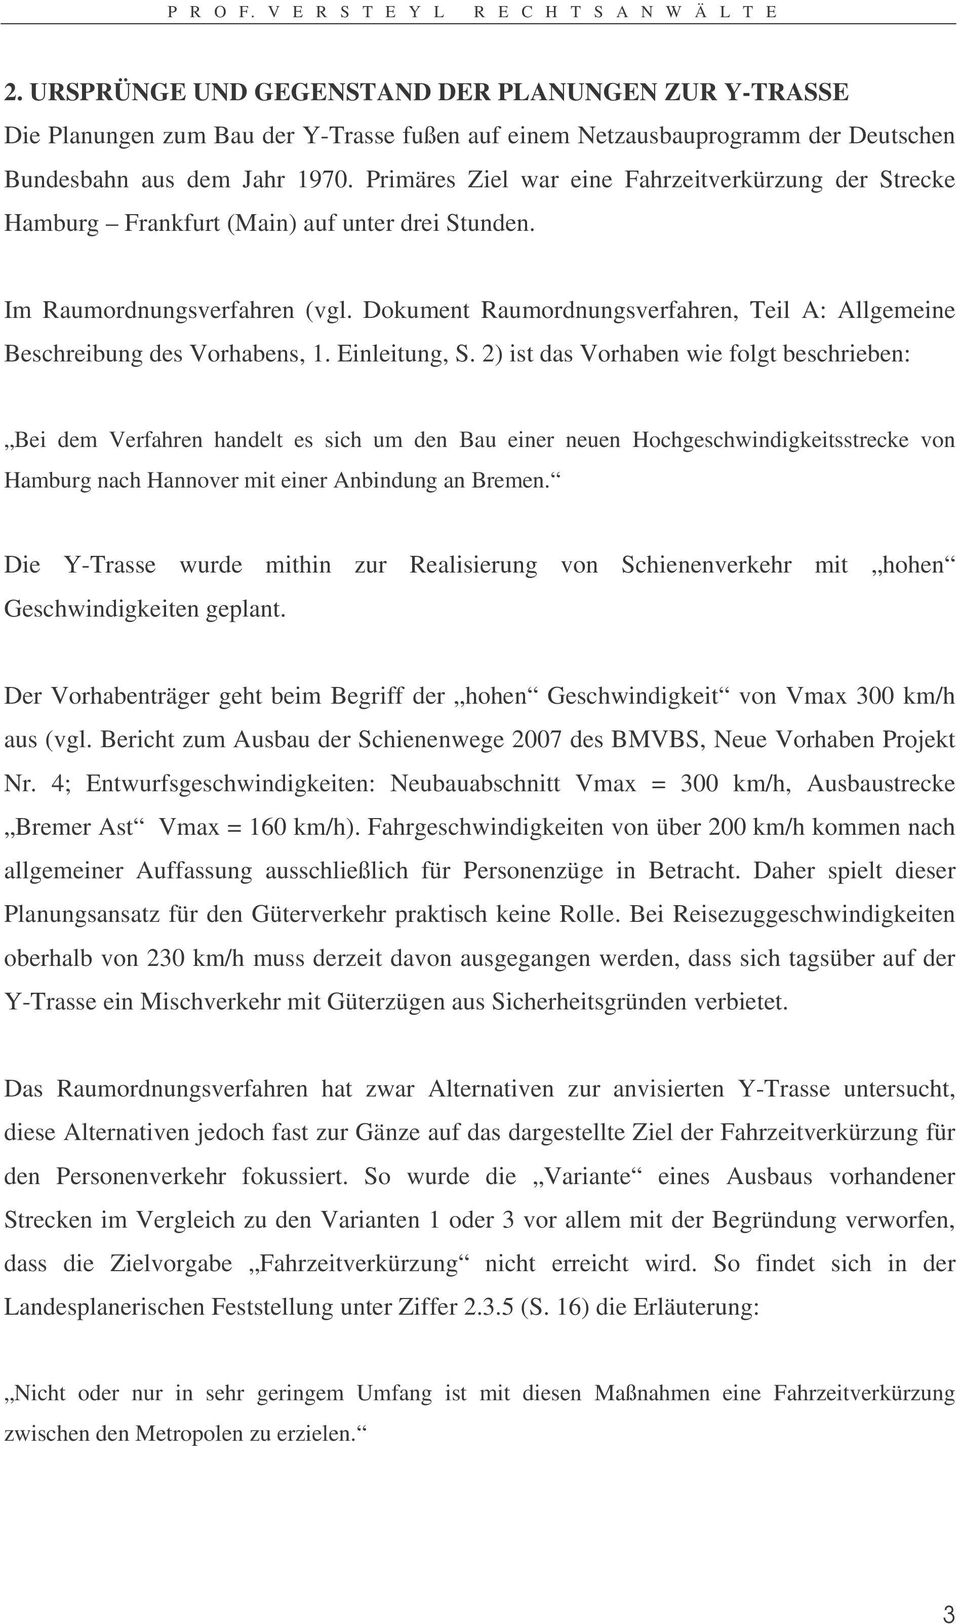 Dokument Raumordnungsverfahren, Teil A: Allgemeine Beschreibung des Vorhabens, 1. Einleitung, S.